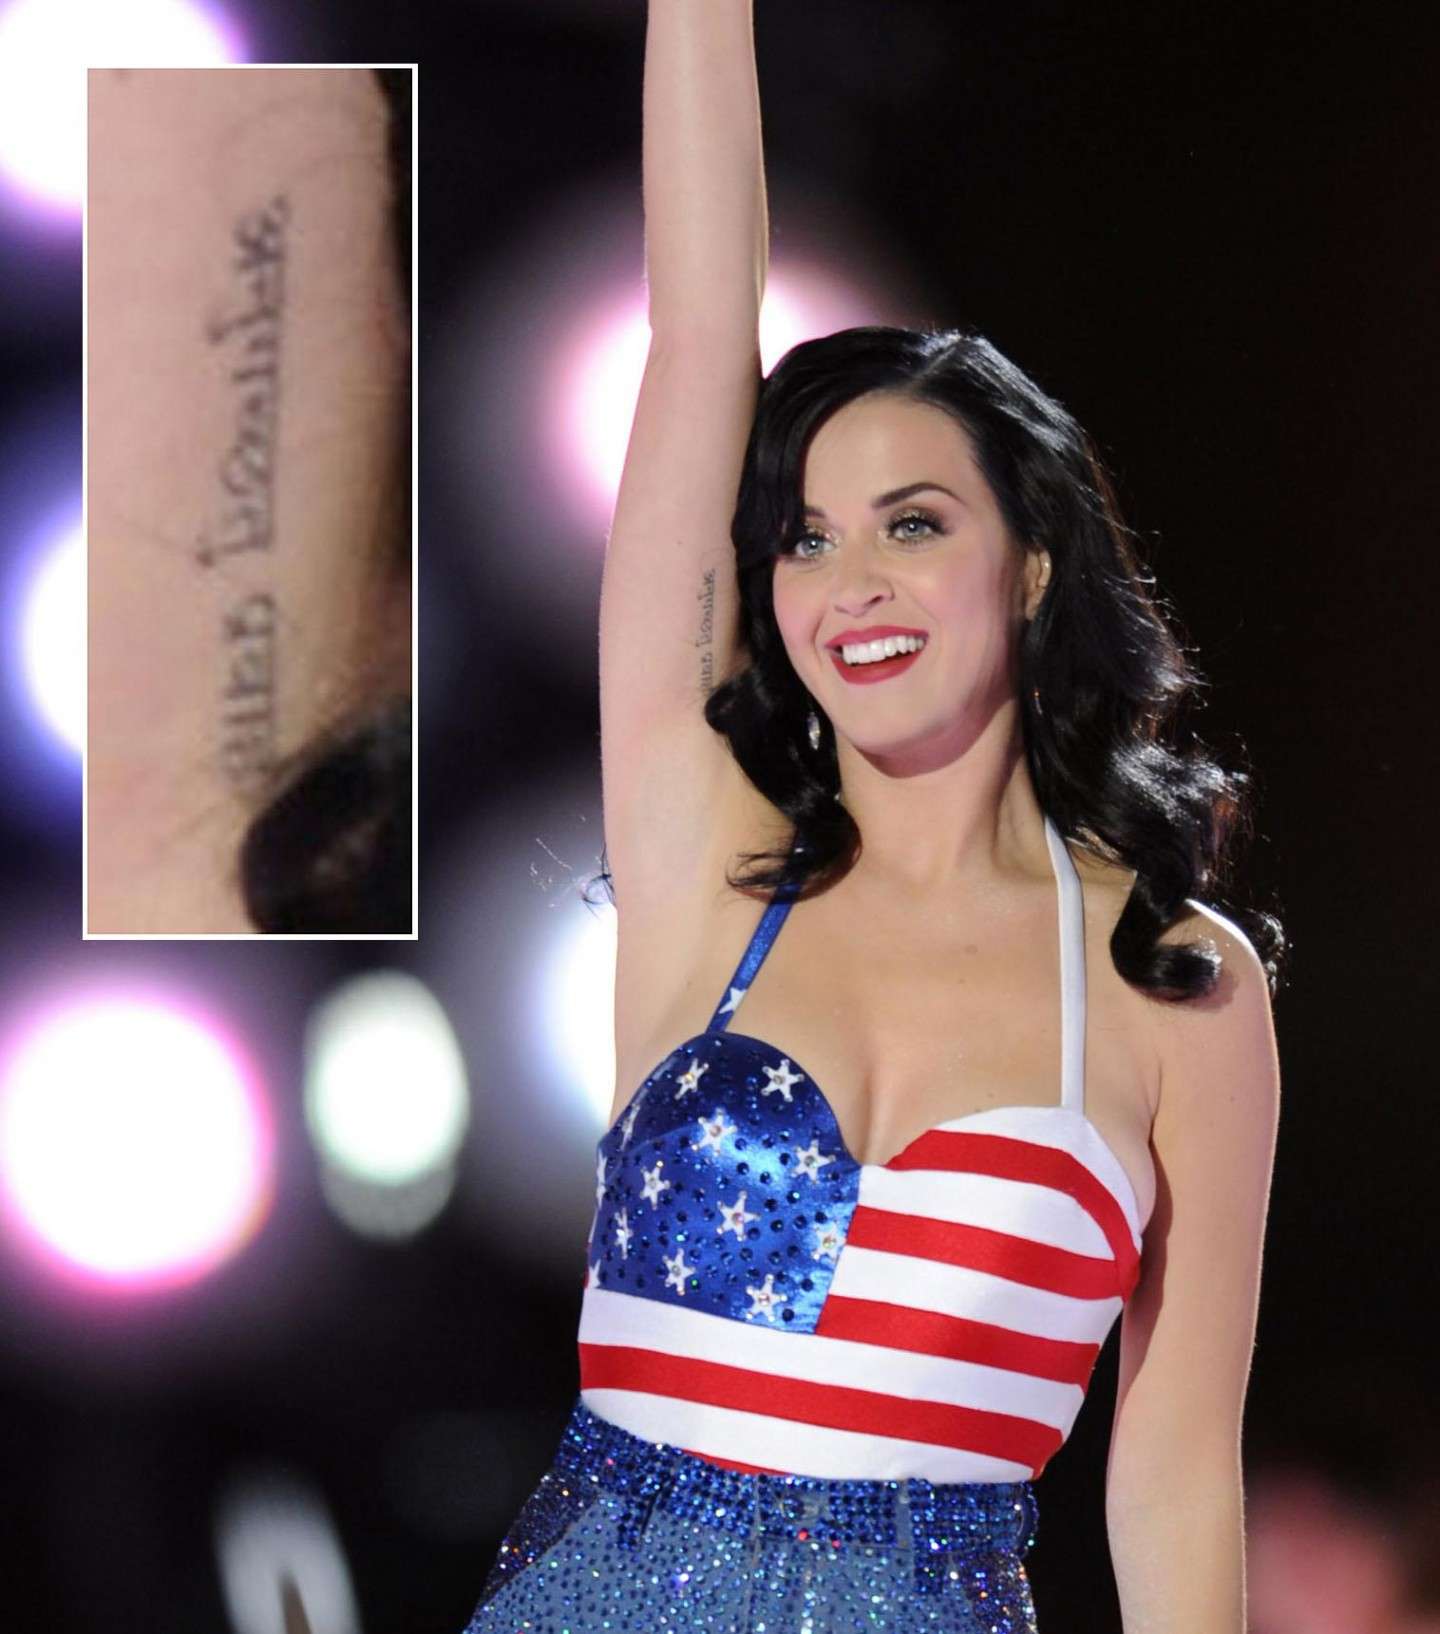 Scritta in sanscrito tatuata sul braccio di Katy Perry 